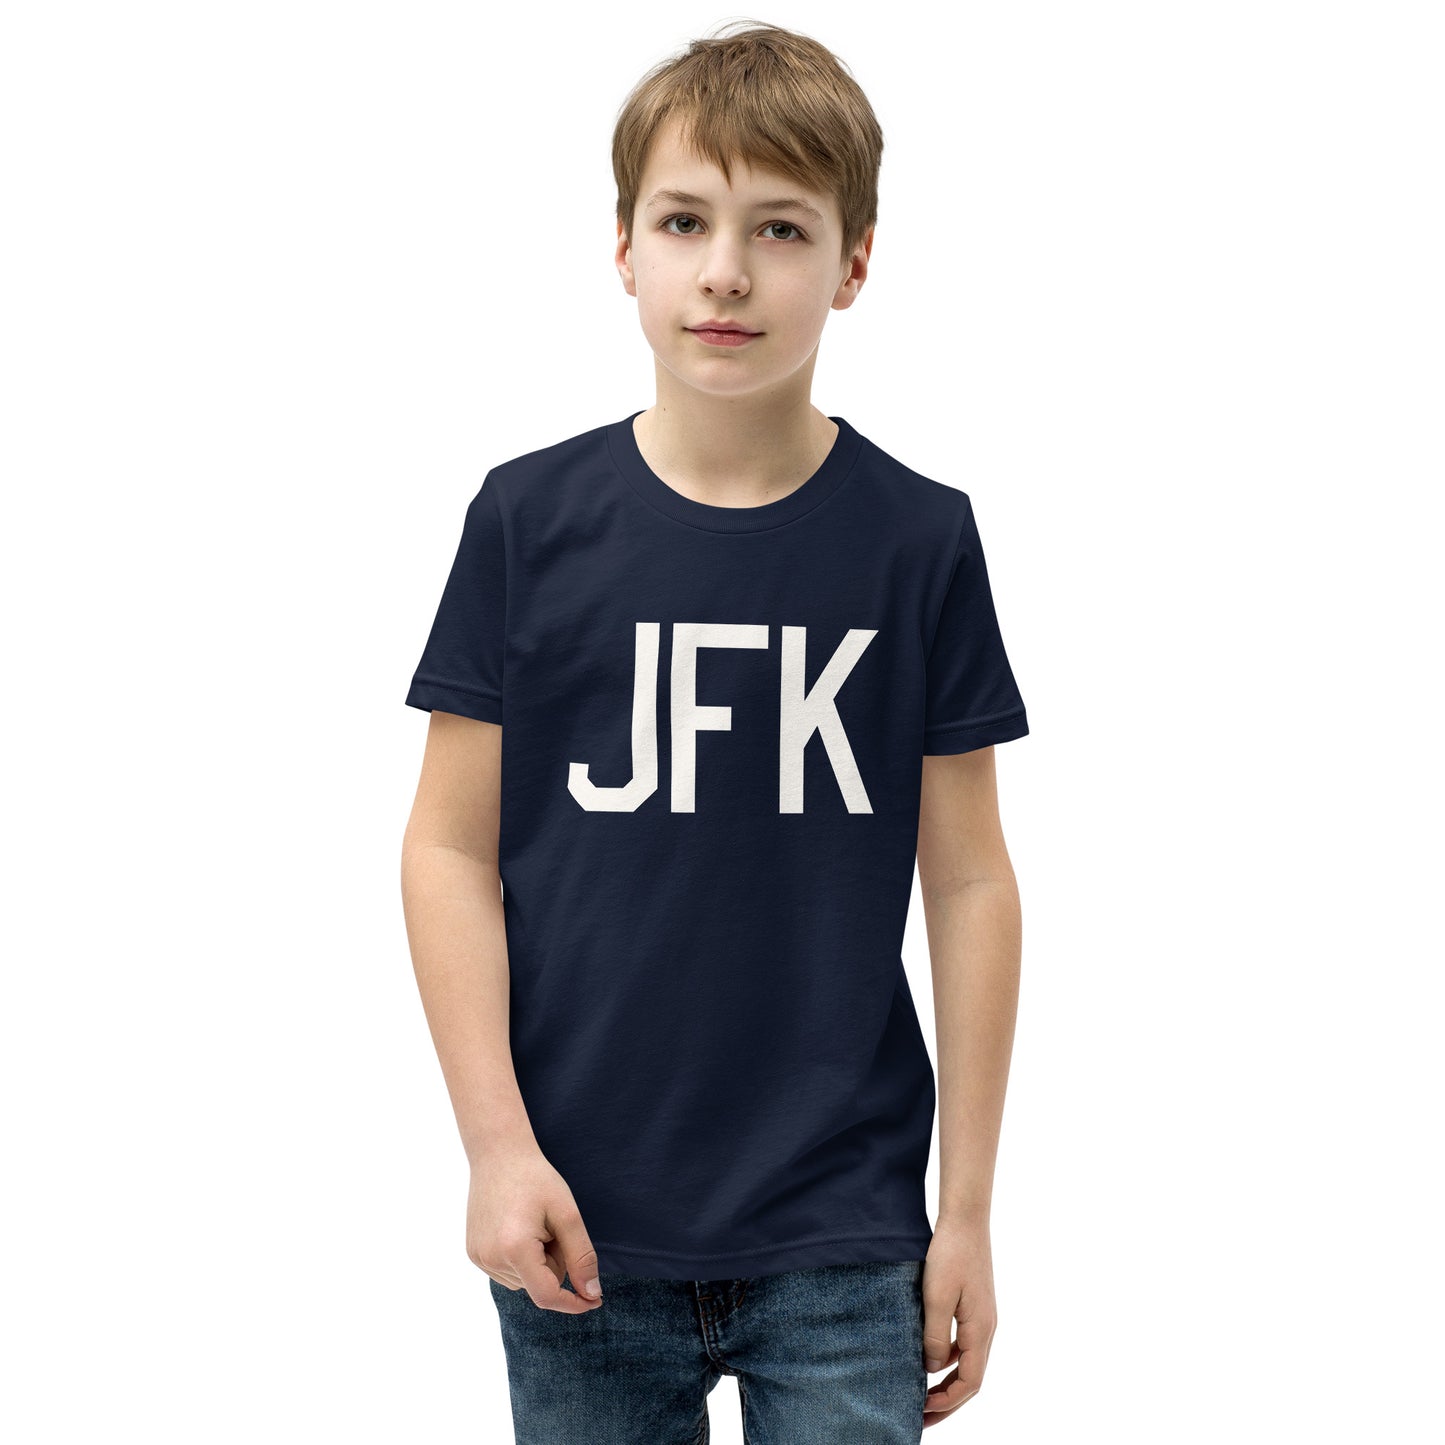 Kid's T-Shirt - White Graphic • JFK New York • YHM Designs - Image 03